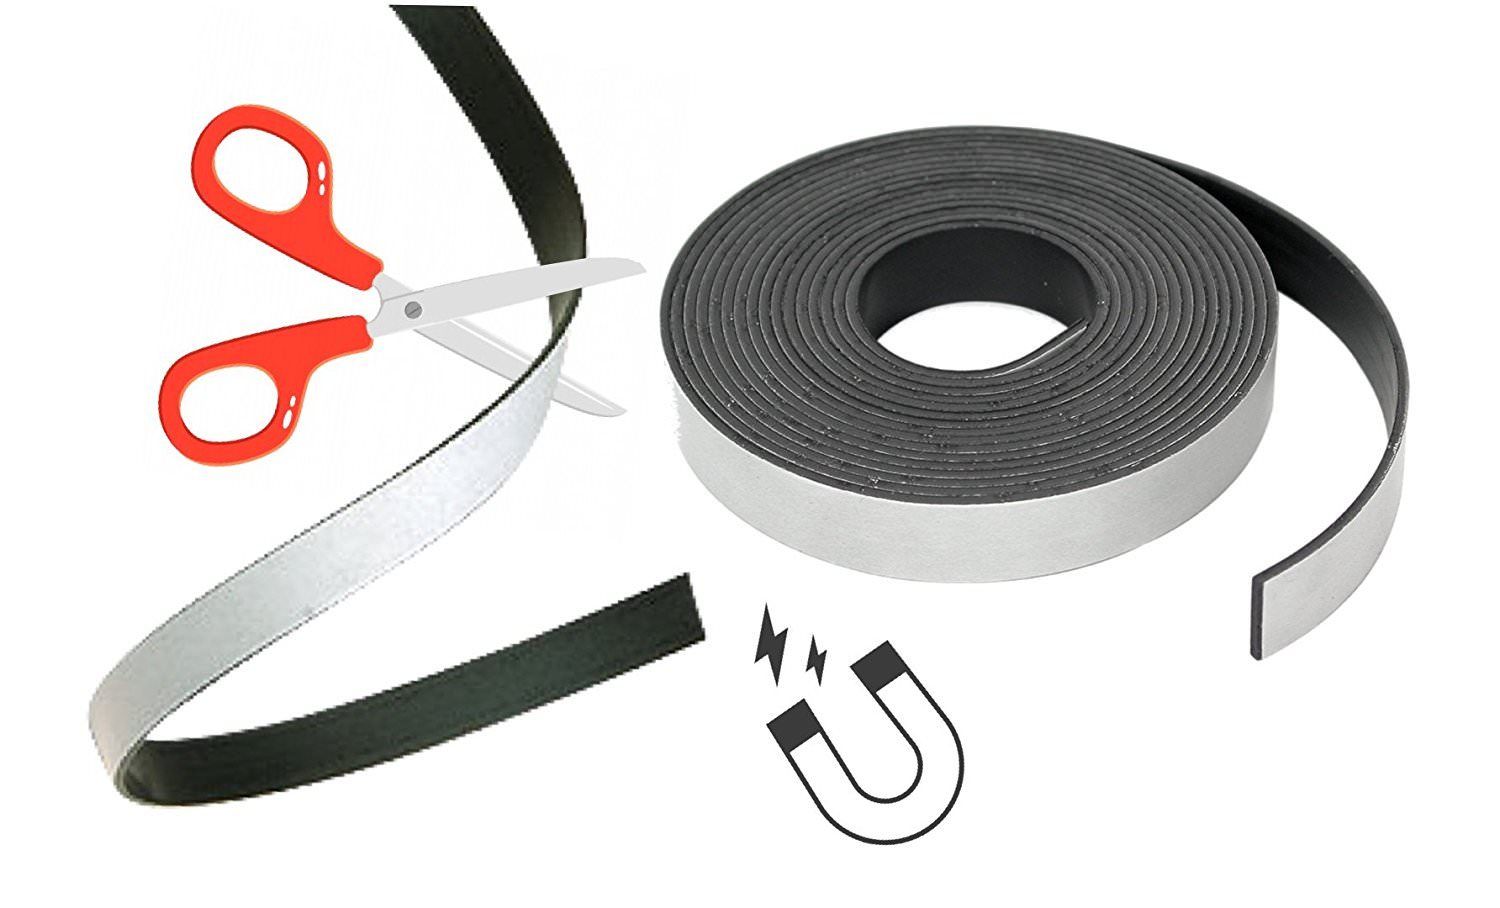 Metallband / Stahlband / Ferroband - Haftgrund für Magnete